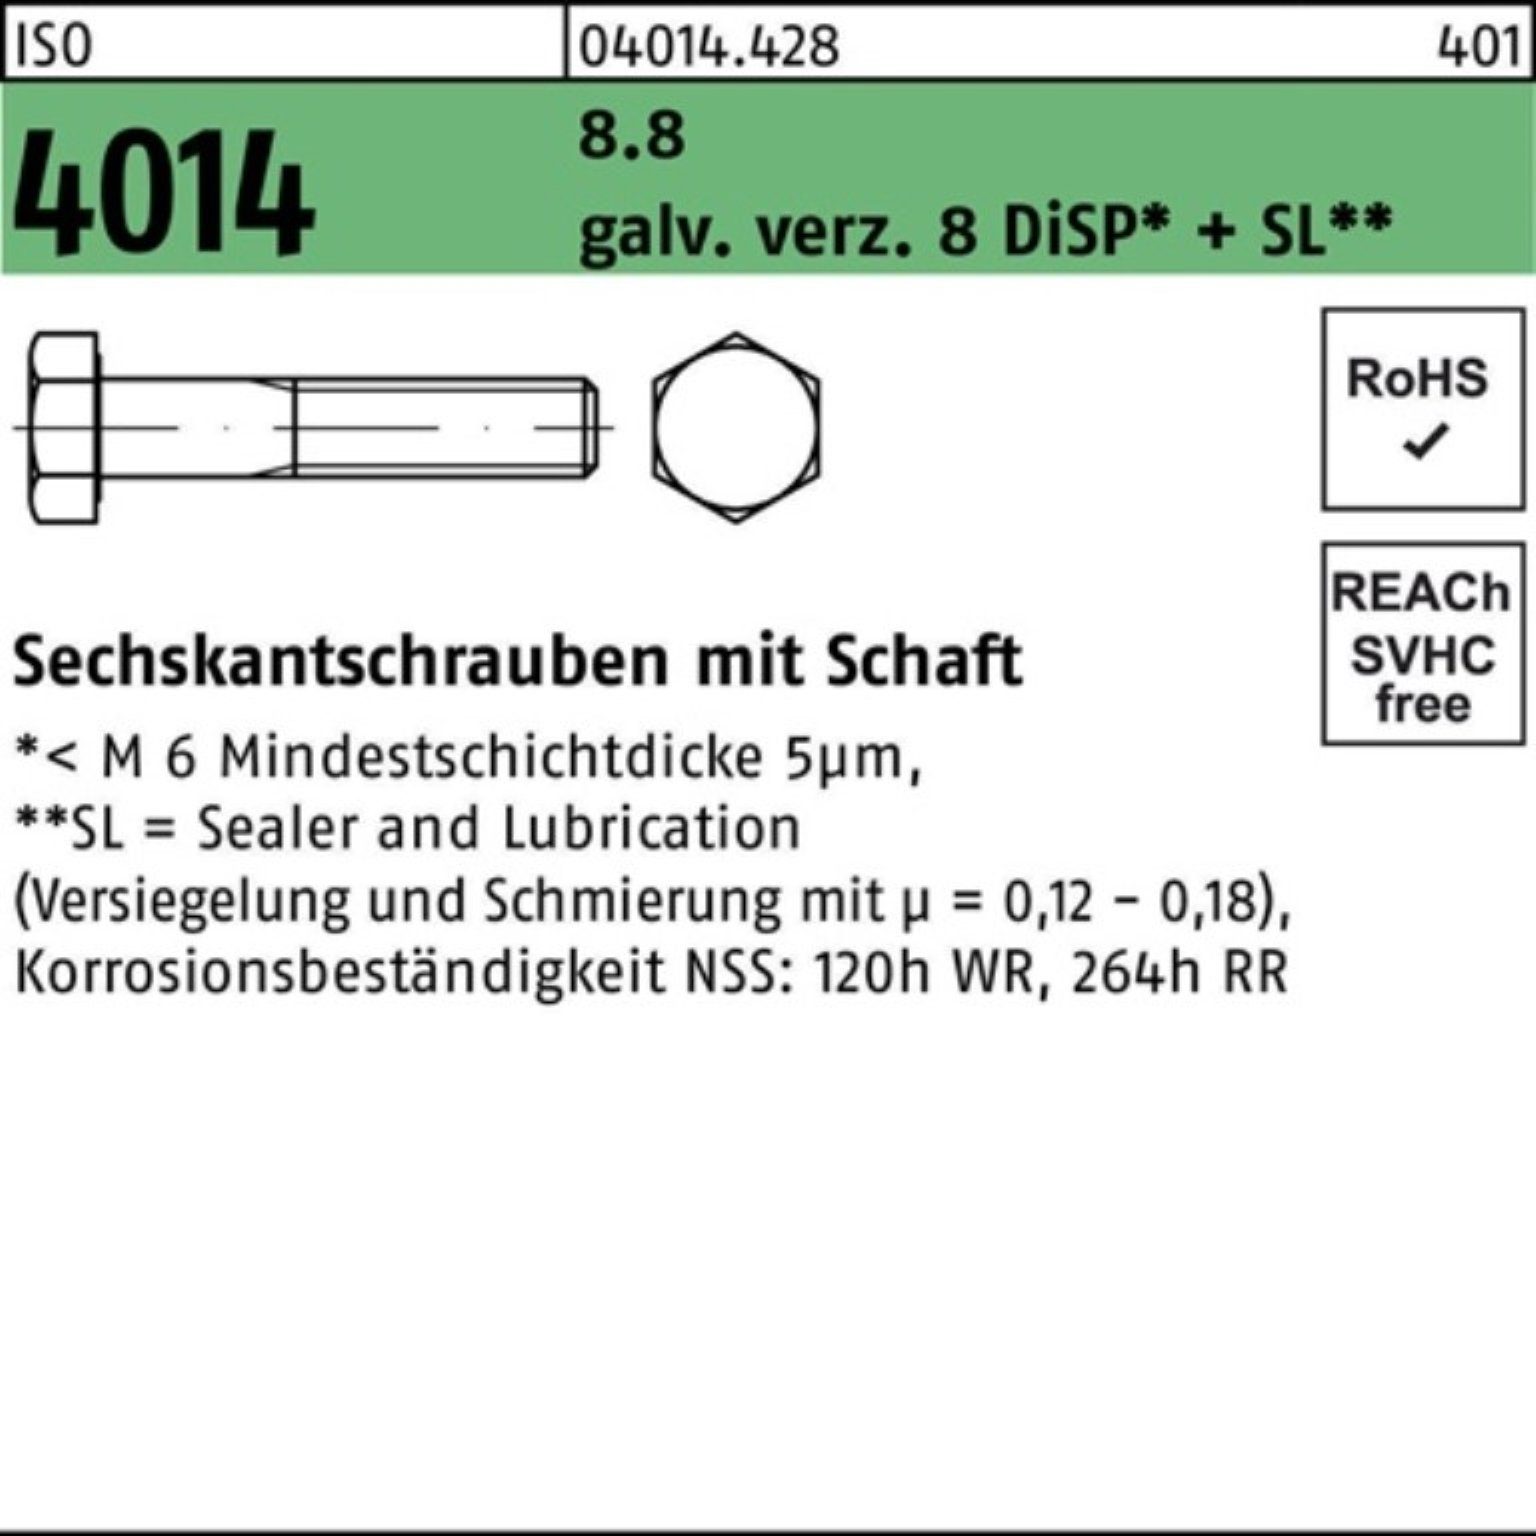 Bufab Sechskantschraube 100er Pack Sechskantschraube ISO 4014 Schaft M10x160 8.8 galv.verz. 8